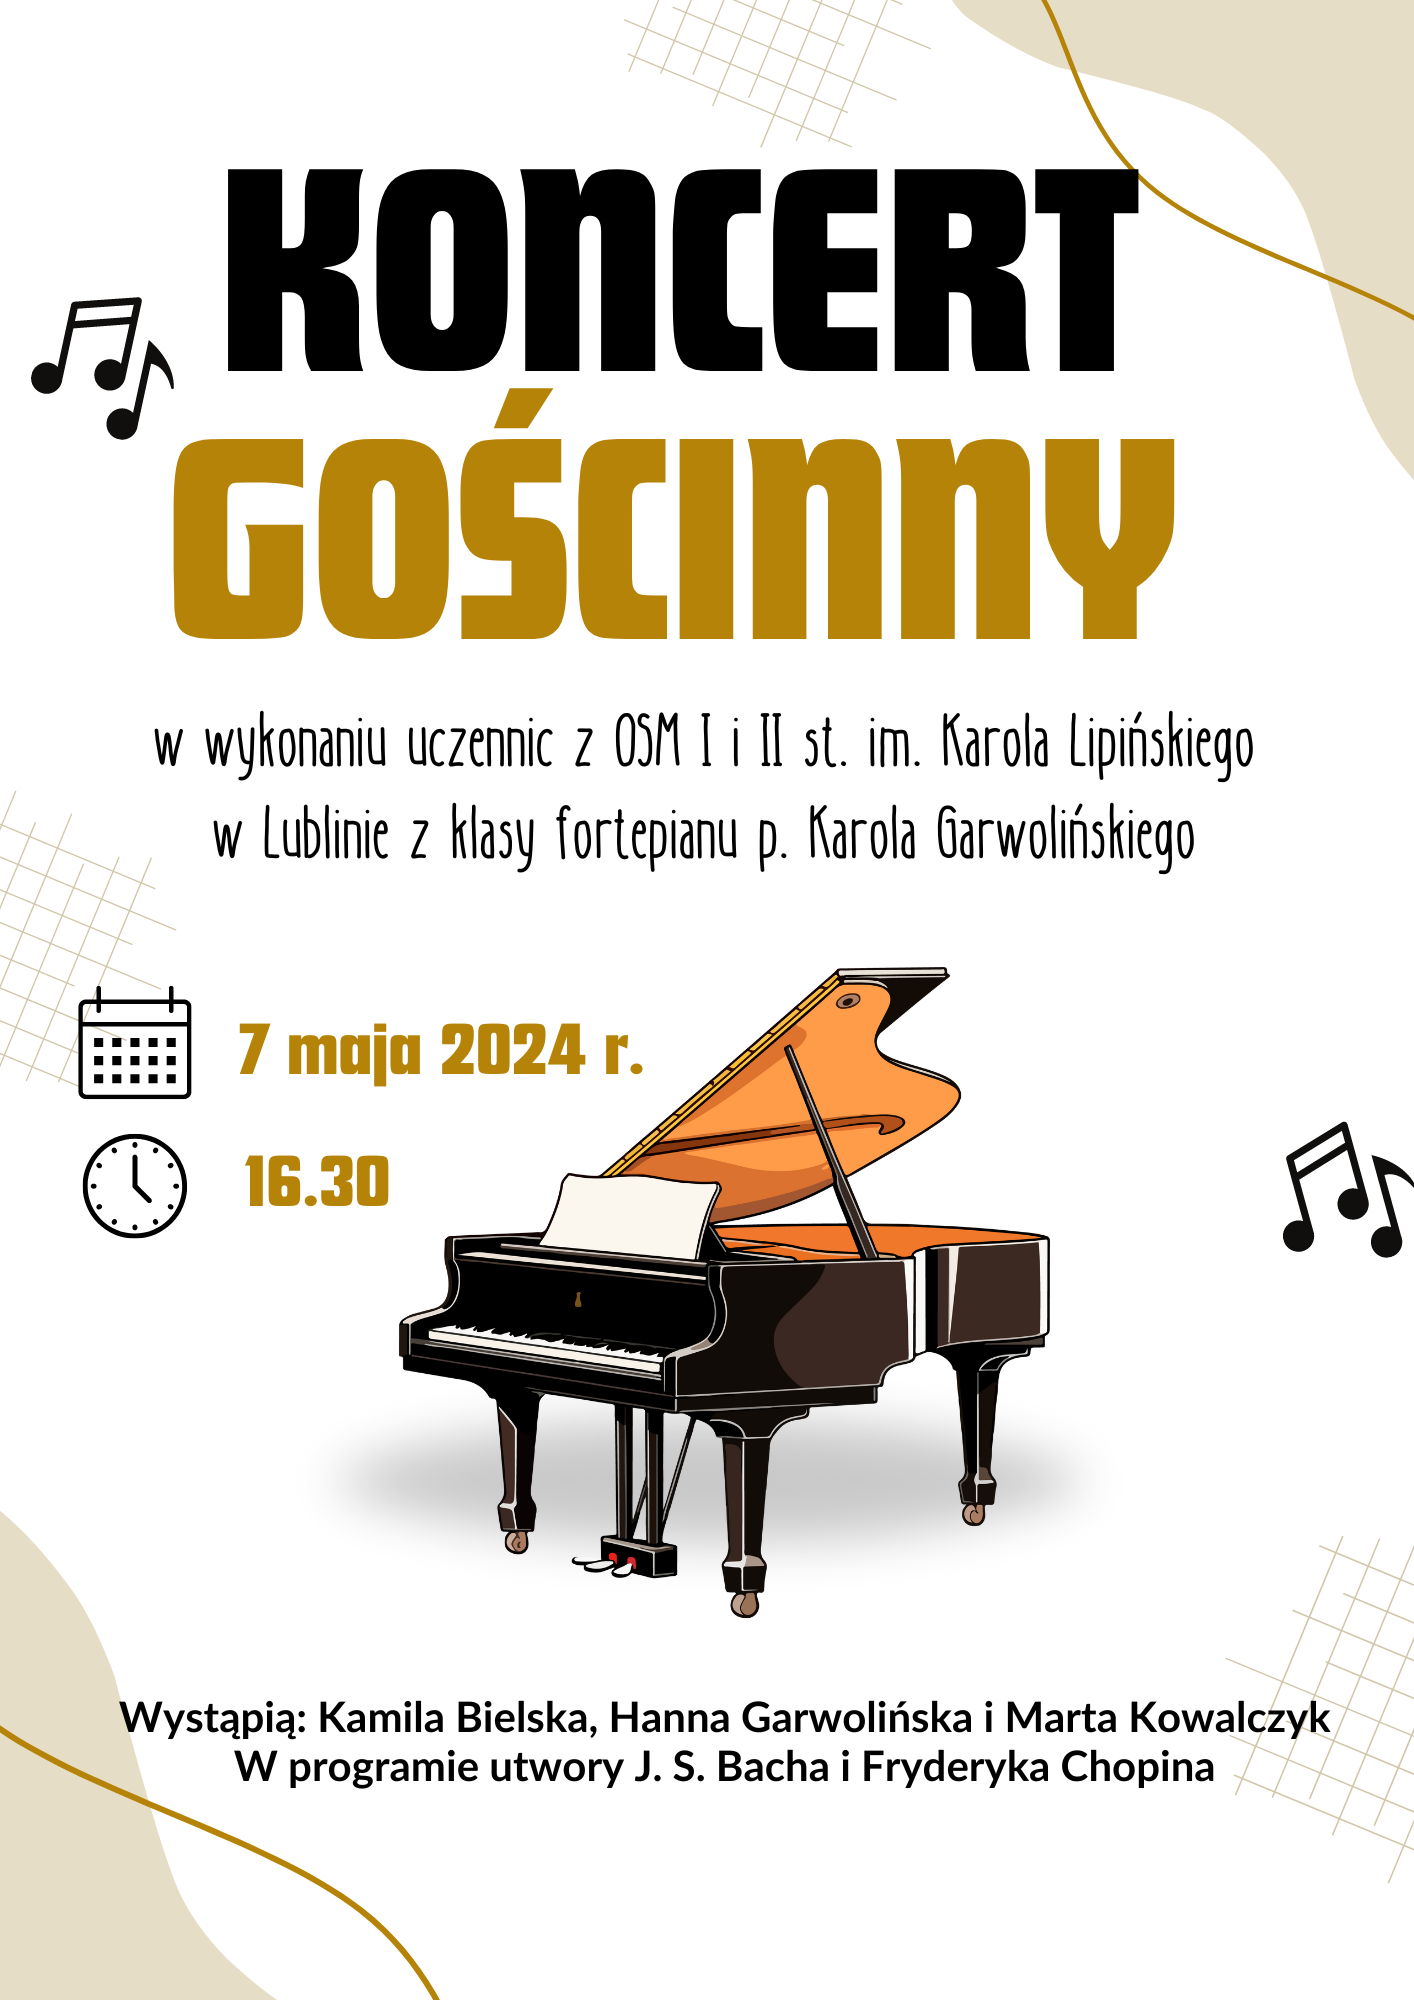 Plakat ze szczegółami koncertu na białym tle z grafiką fortepianu